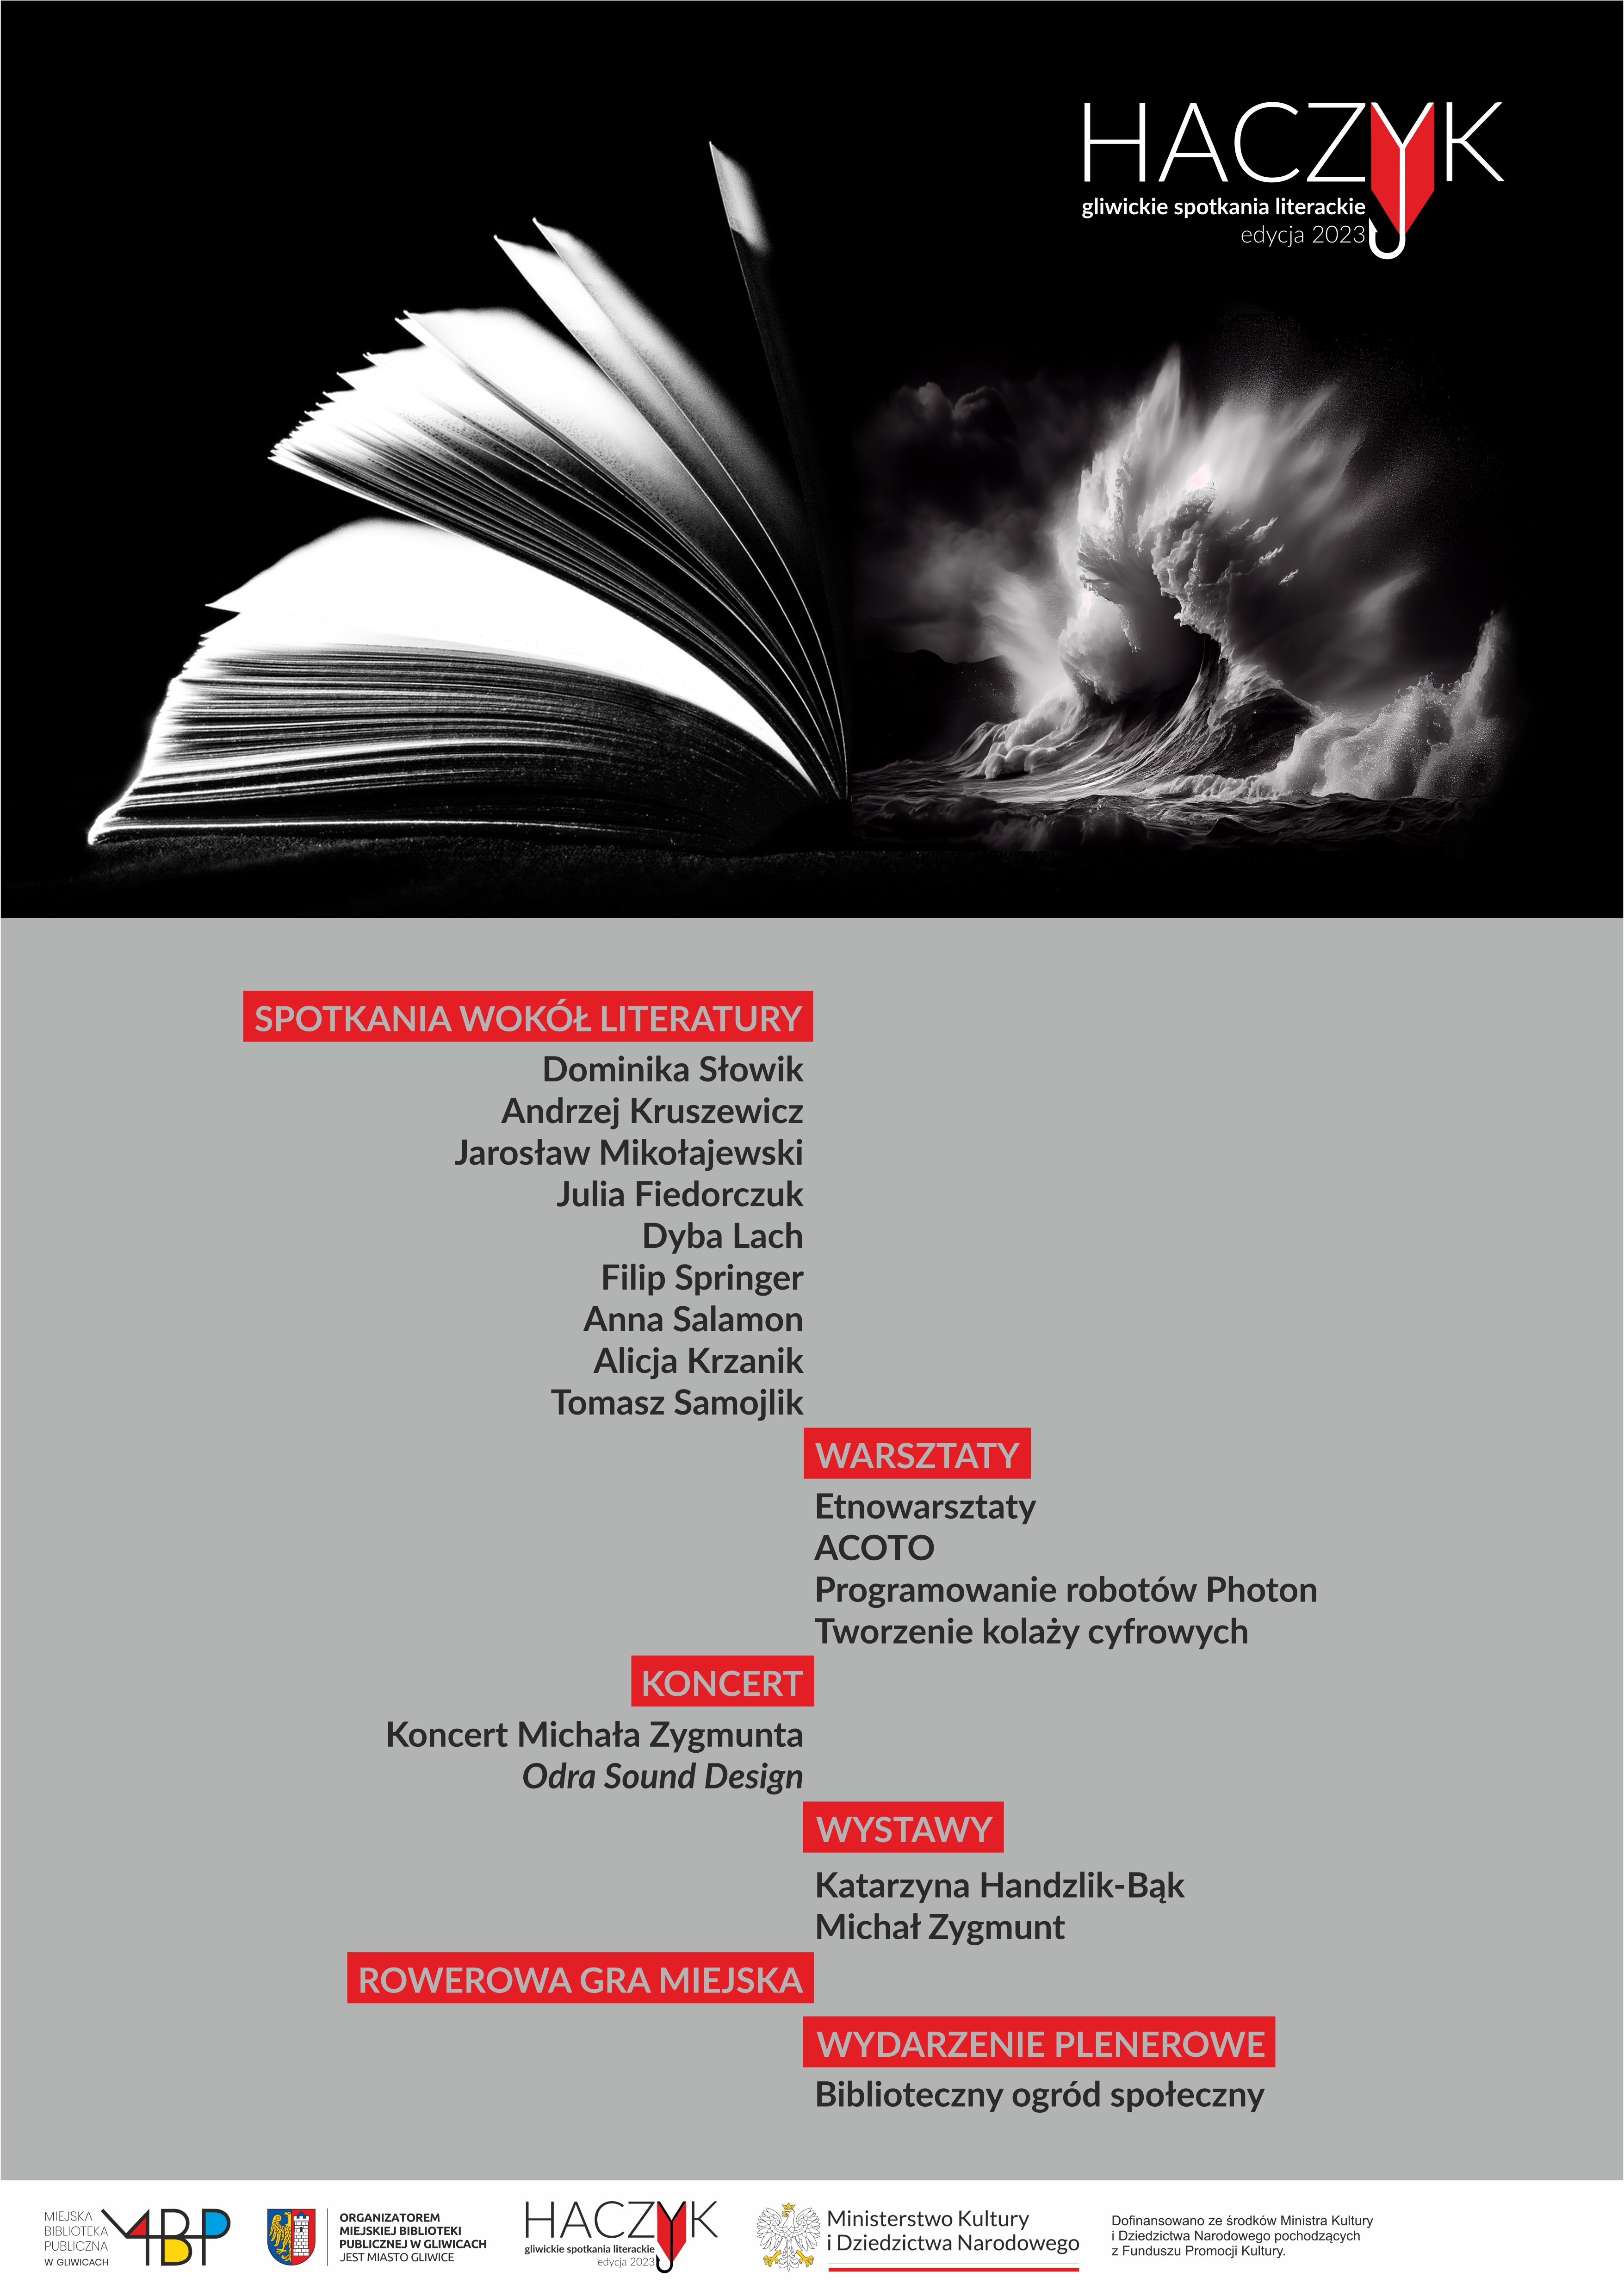 Plakat promujący festiwal "Haczyk - gliwickie spotkania literackie"